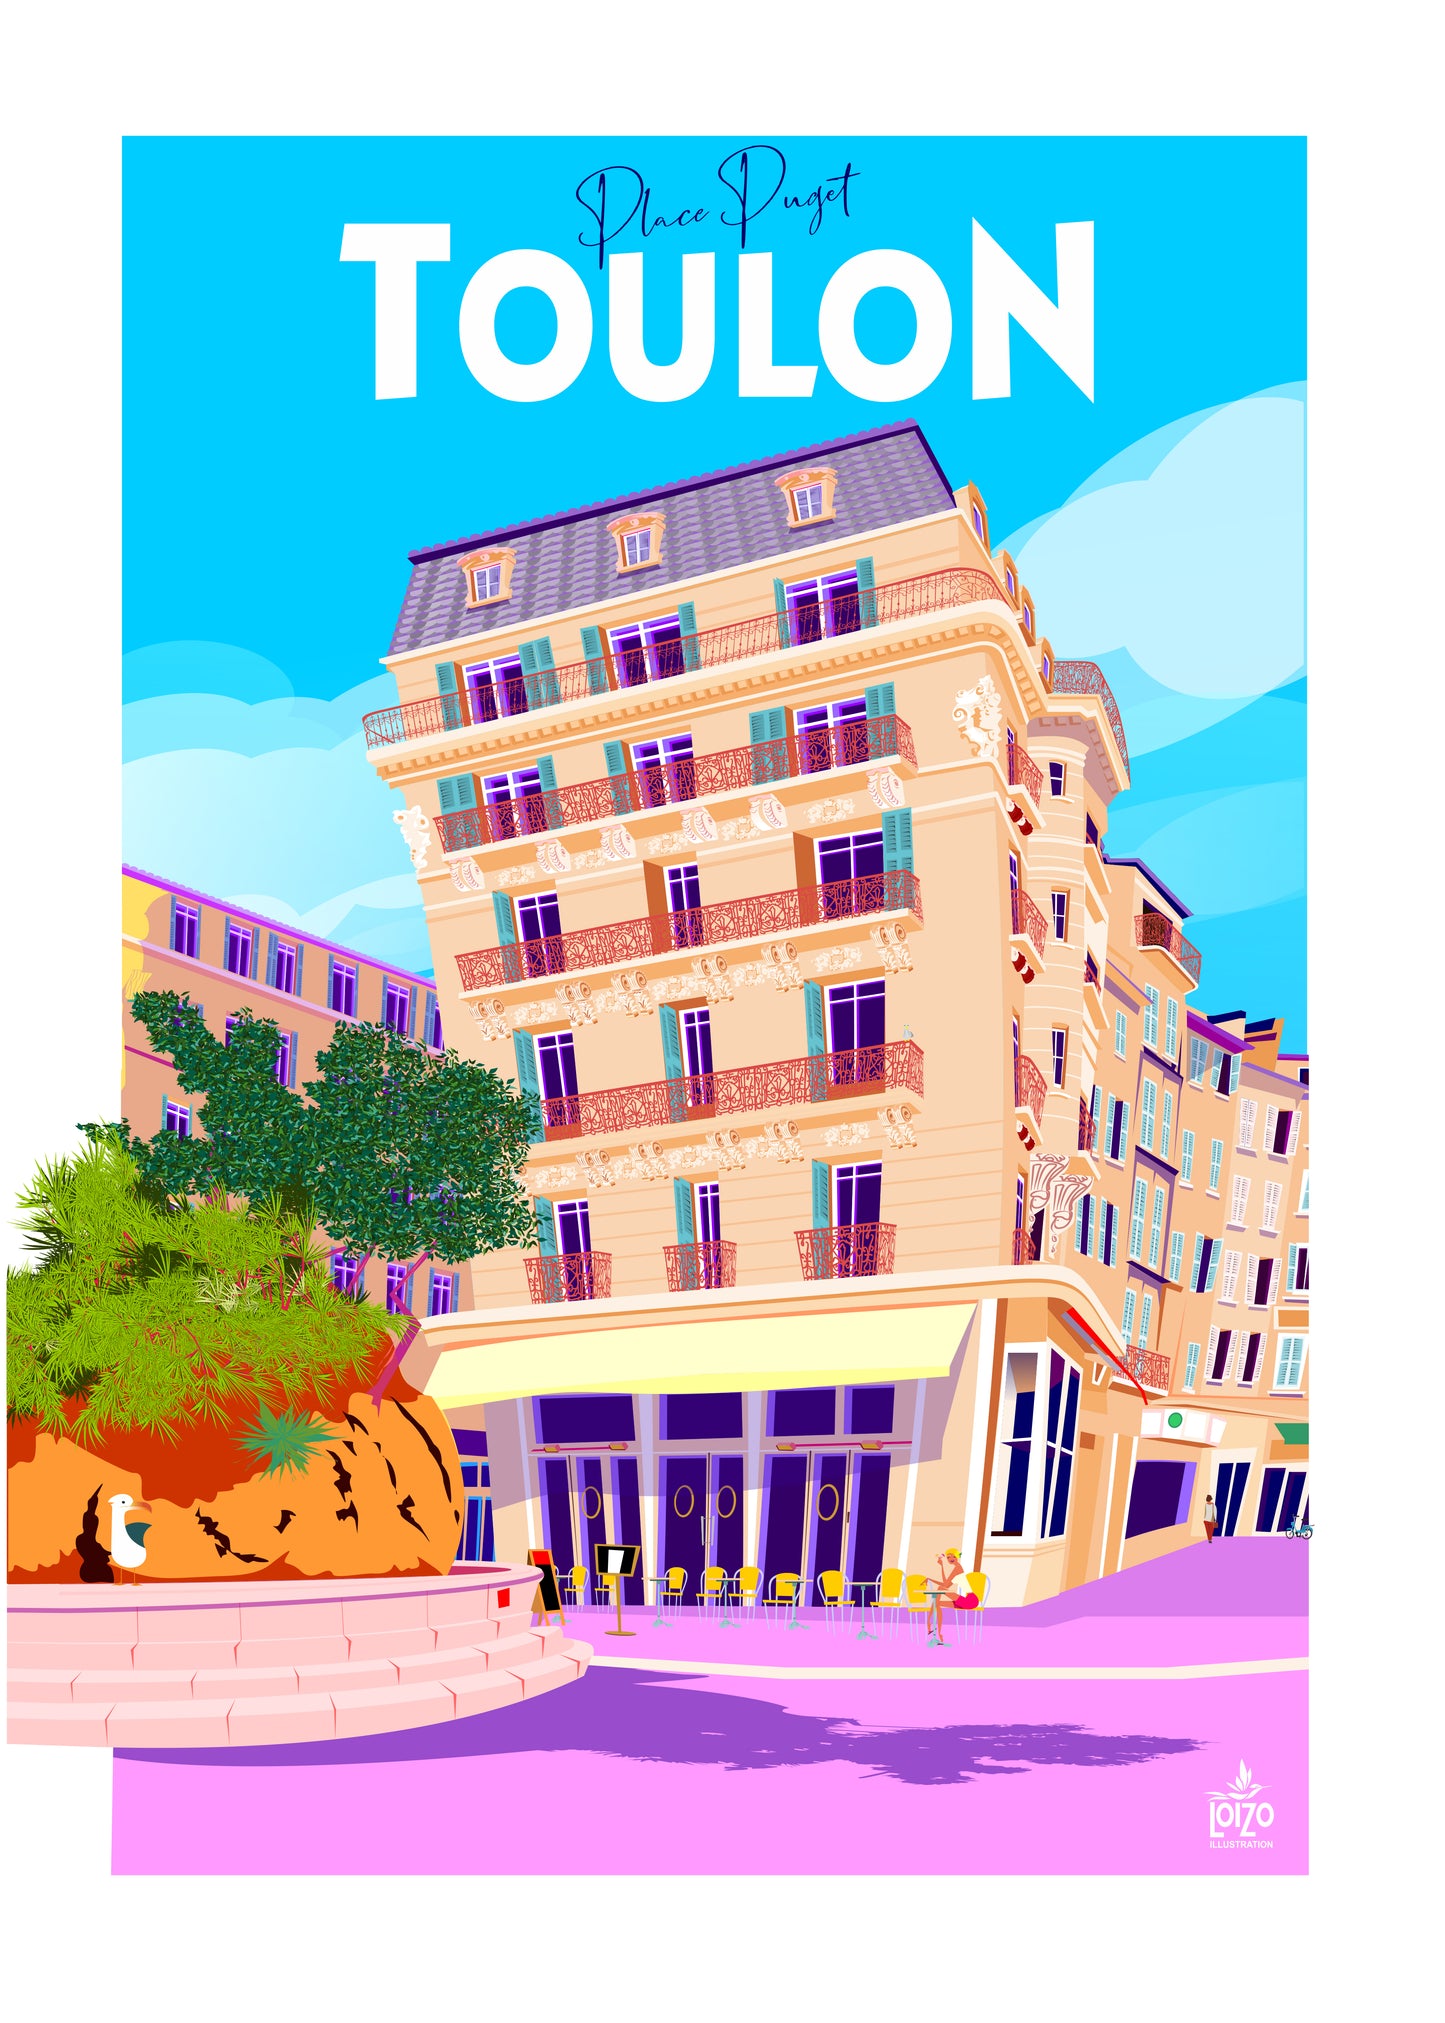 Toulon "la place Puget"